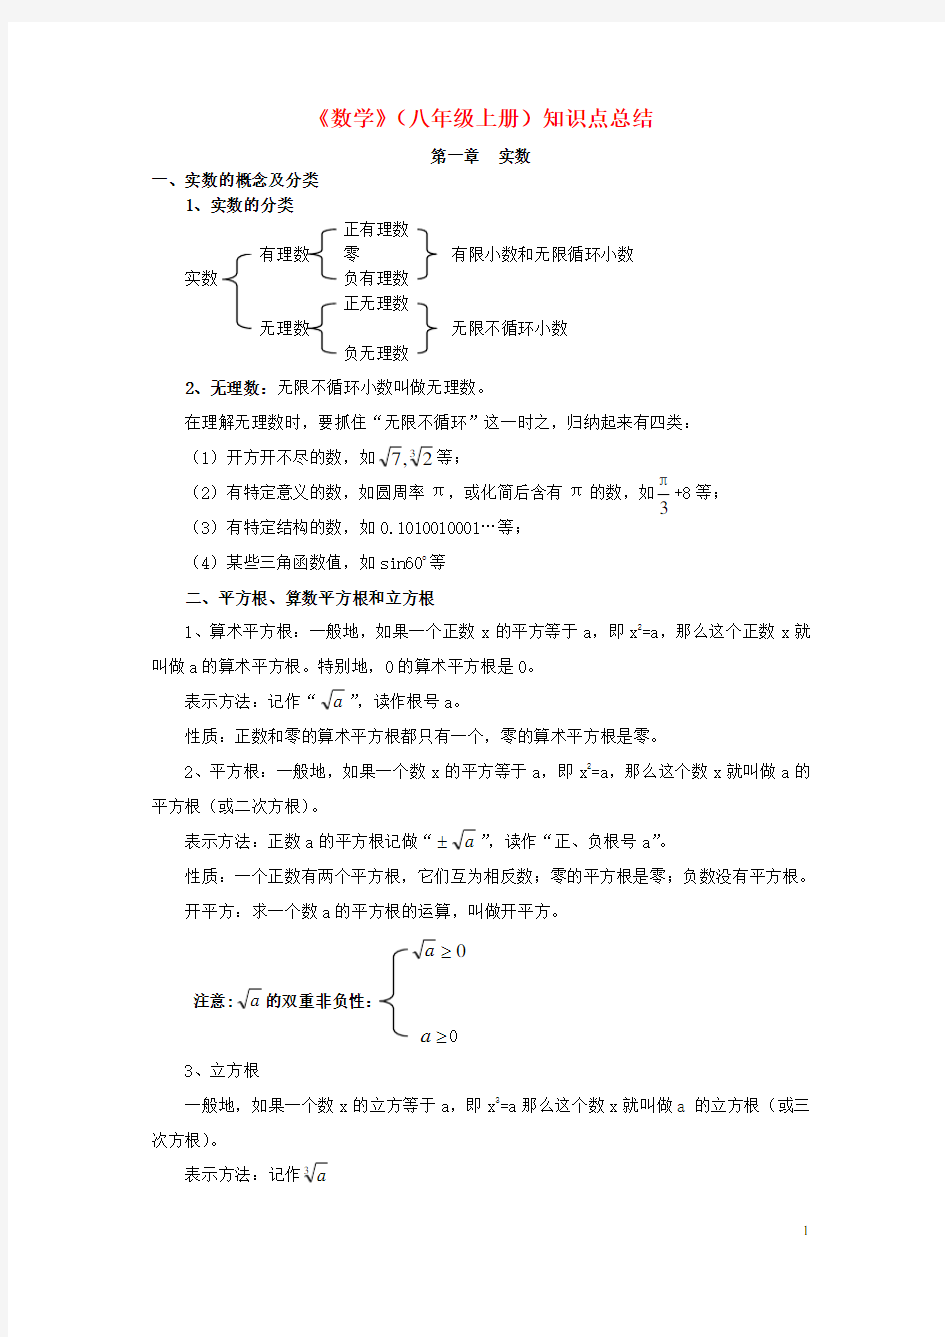 上海八年级数学第一学期_知识点总结